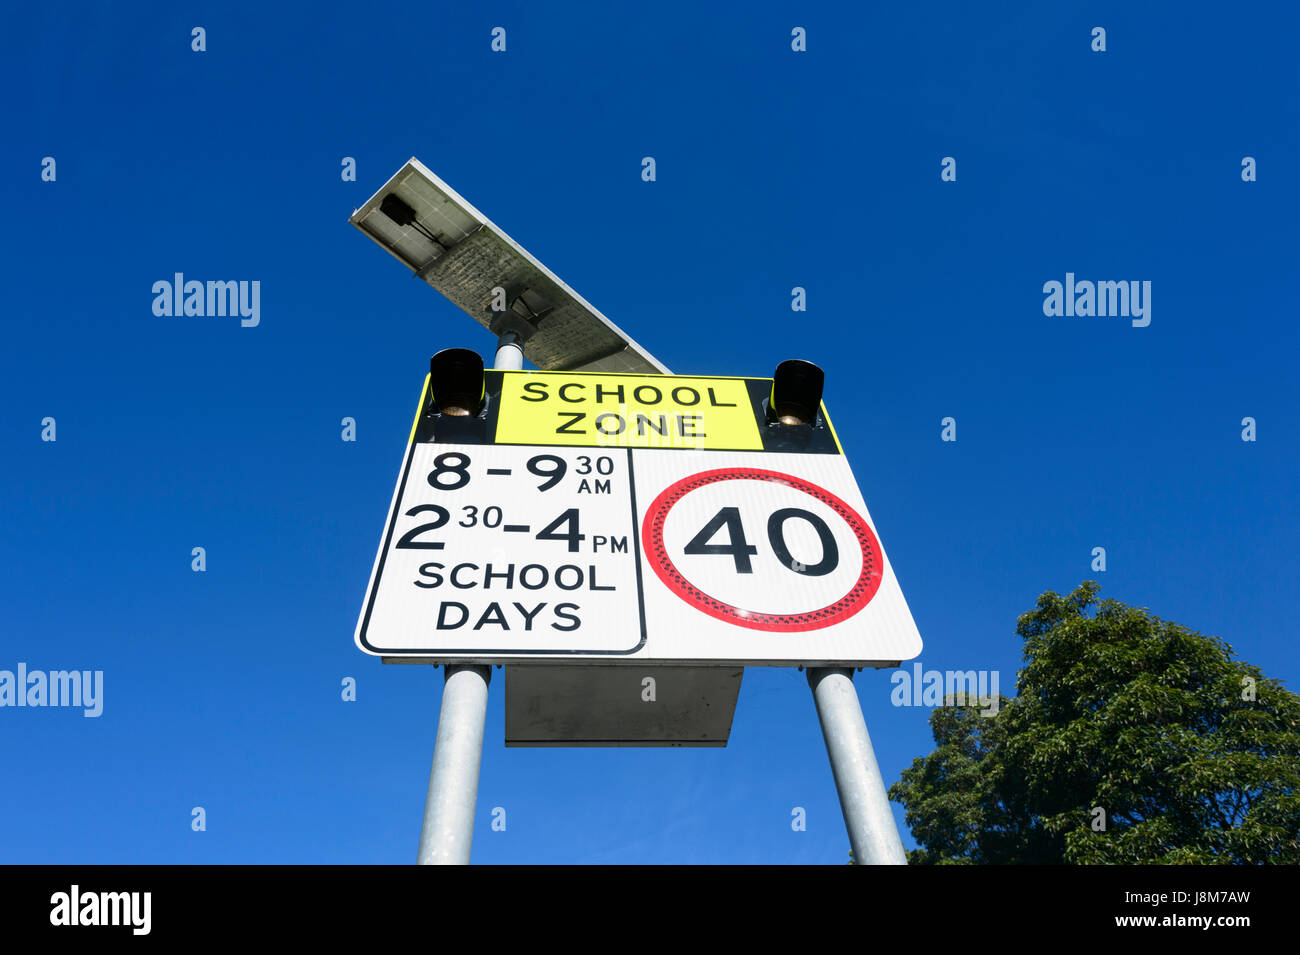 Kmp 40 vitesse limite signer dans une zone scolaire, New South Wales, NSW, Australie Banque D'Images